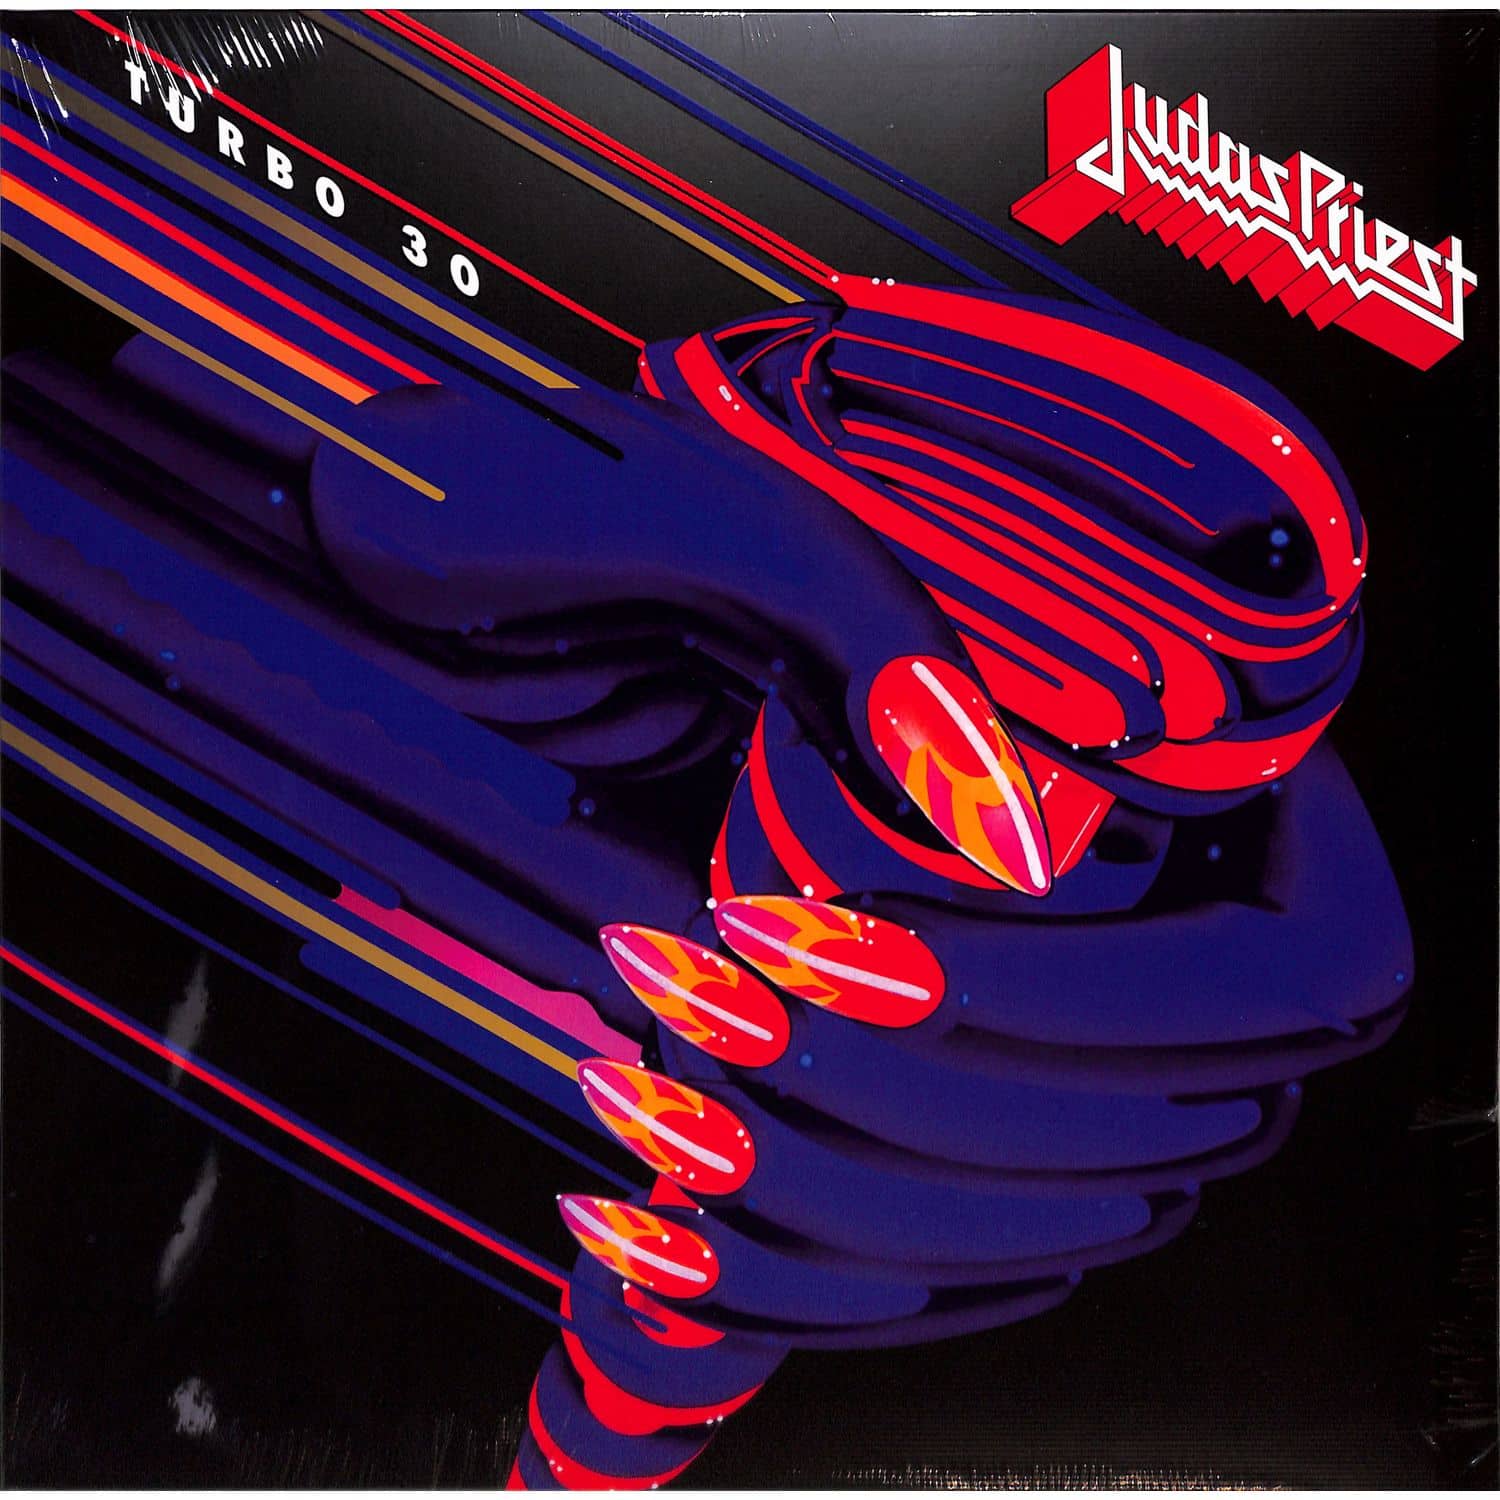 Judas Priest - TURBO 30 